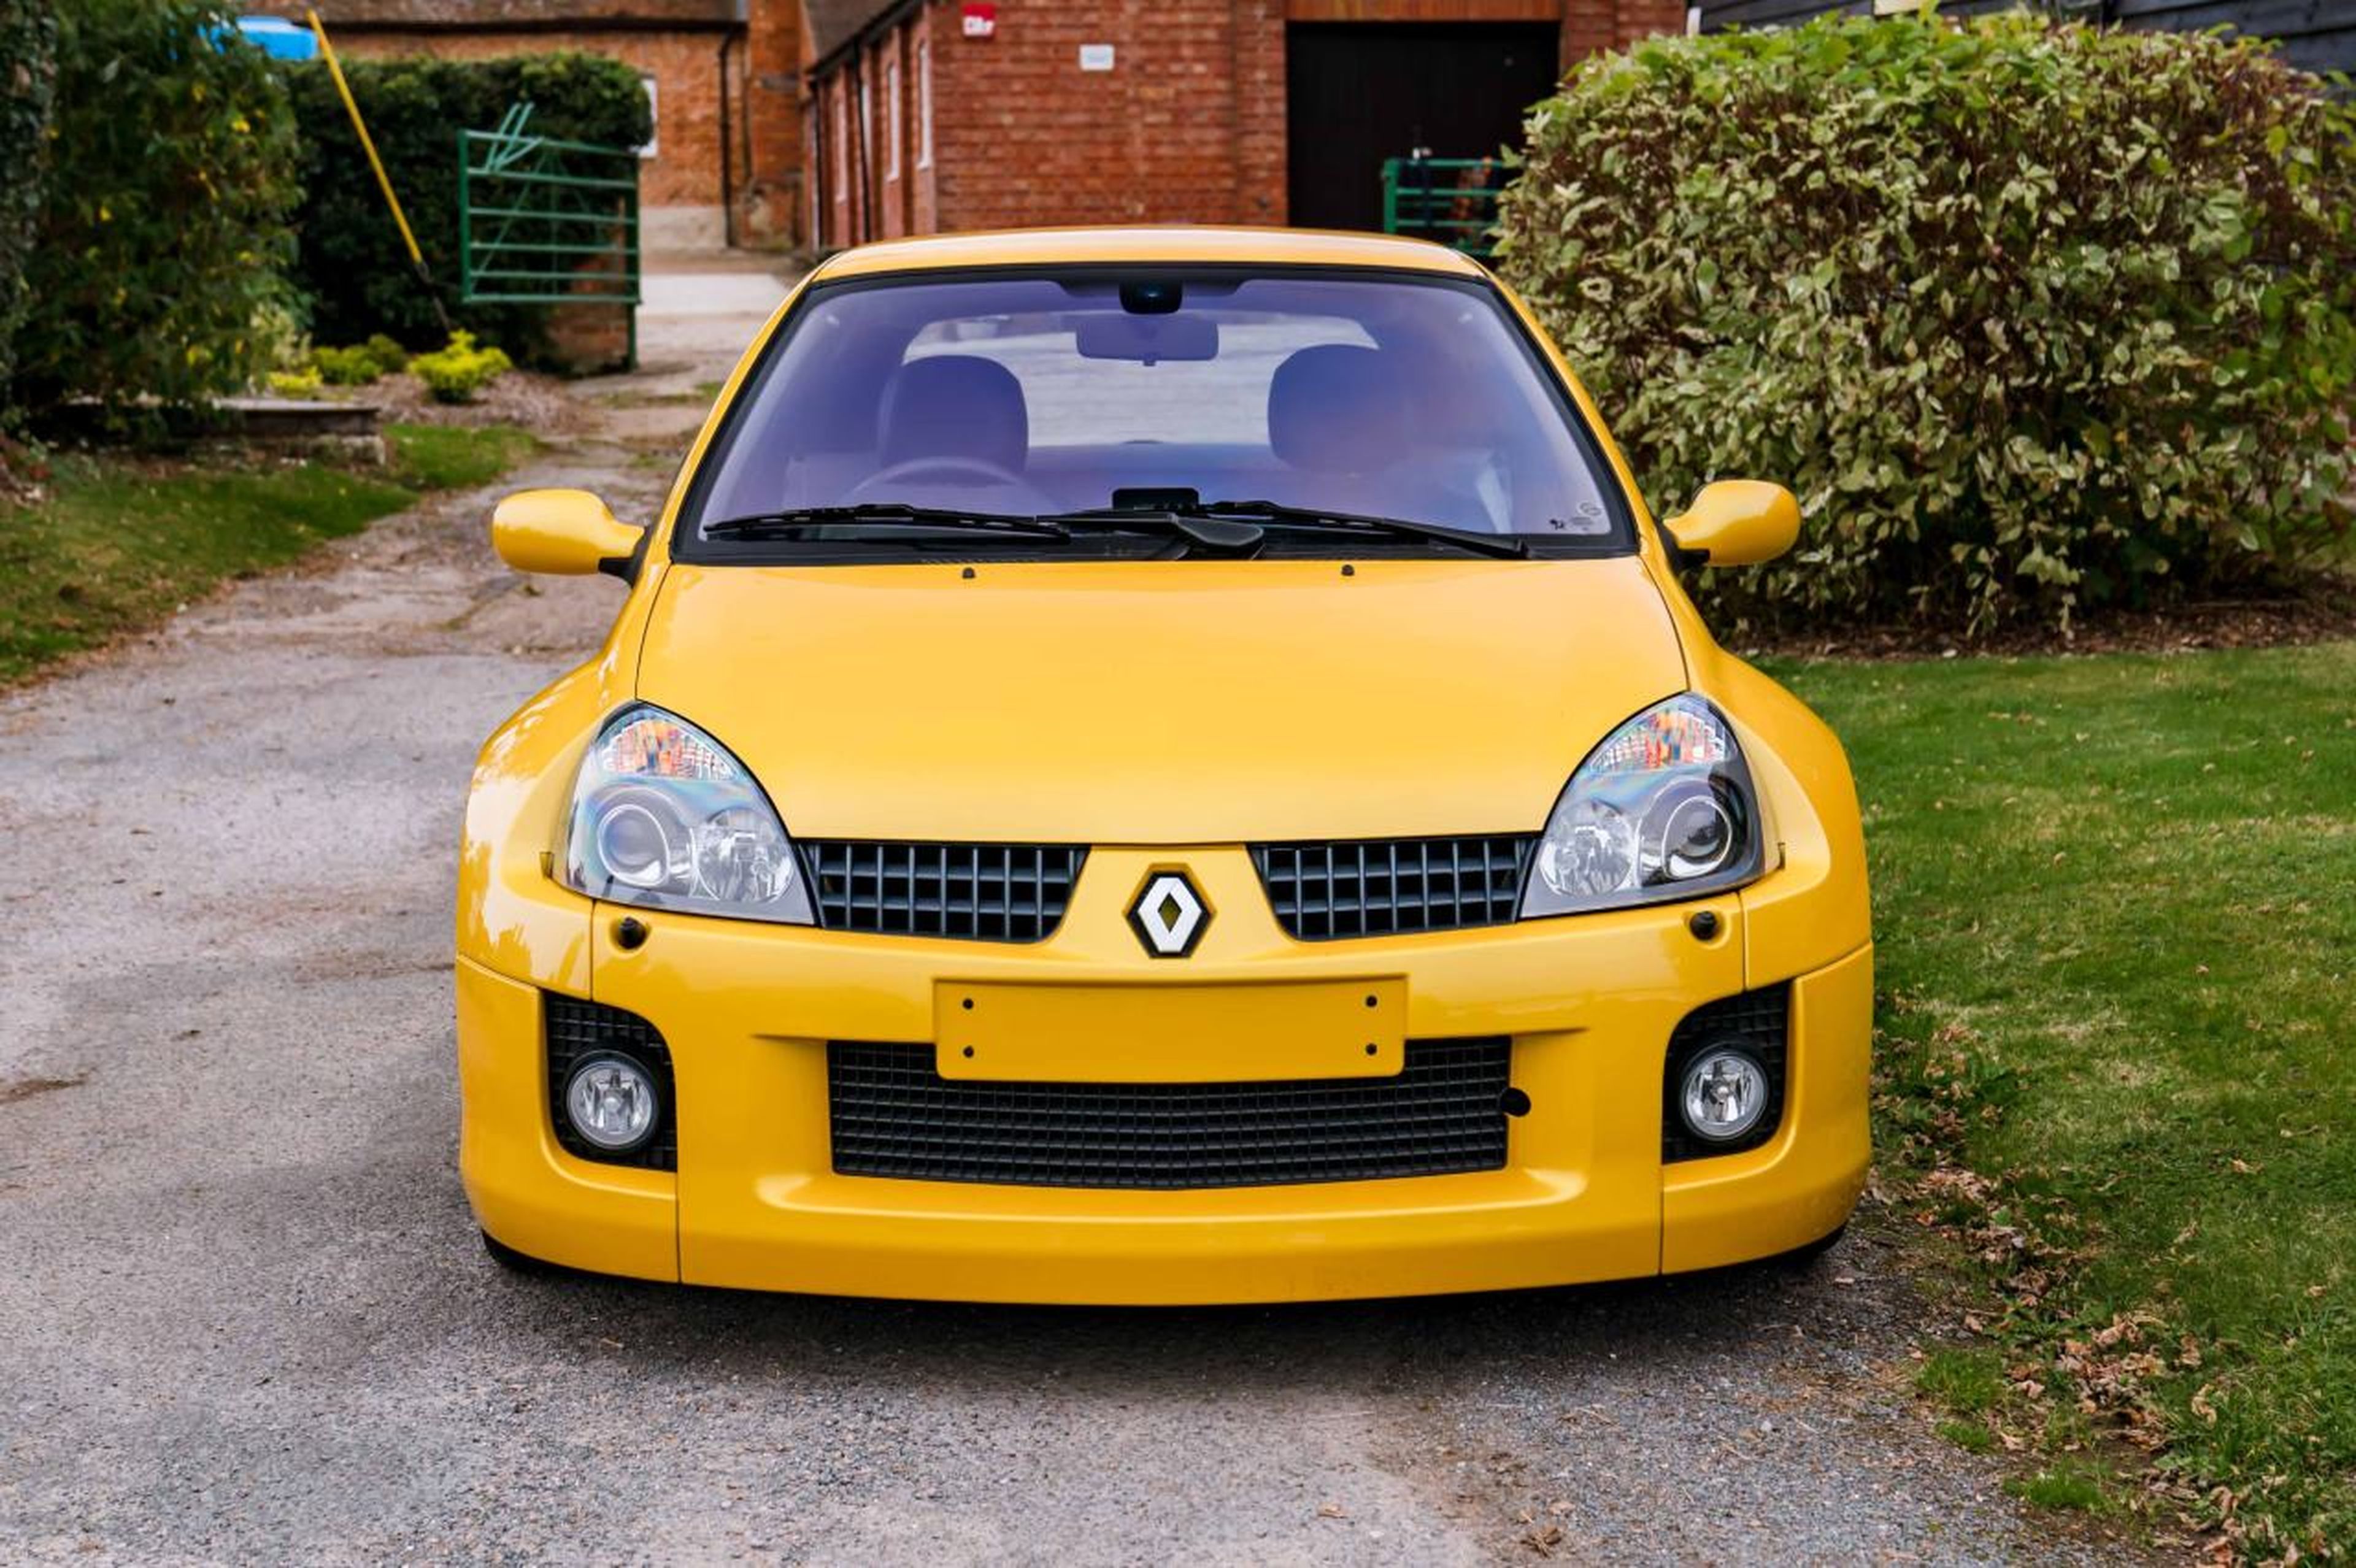 La increíble historia del Renault Clio V6